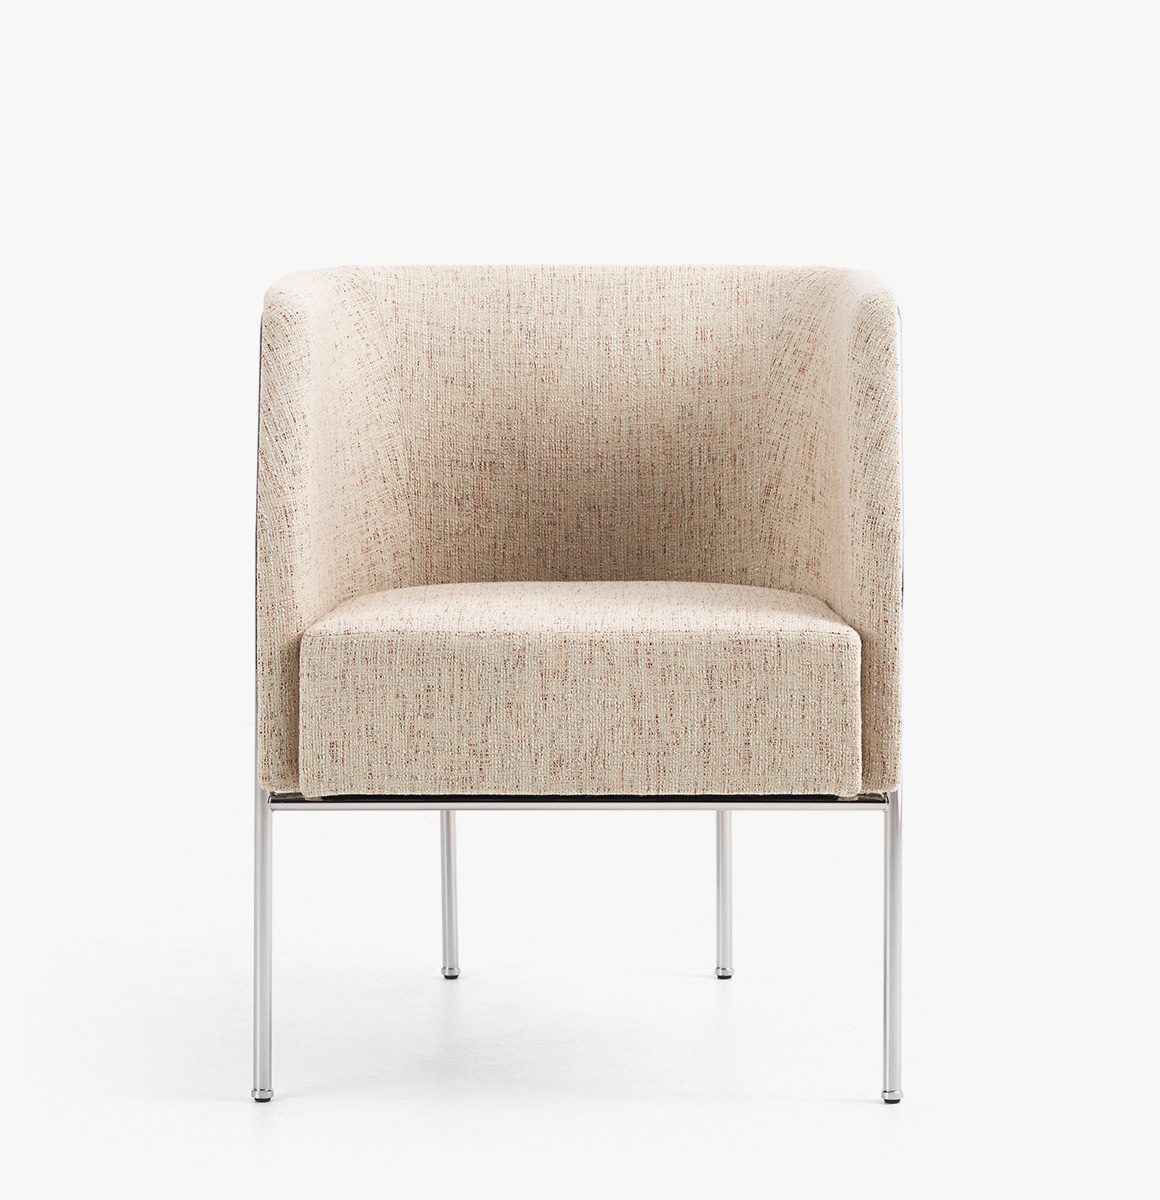 Cajal 7.2 chair